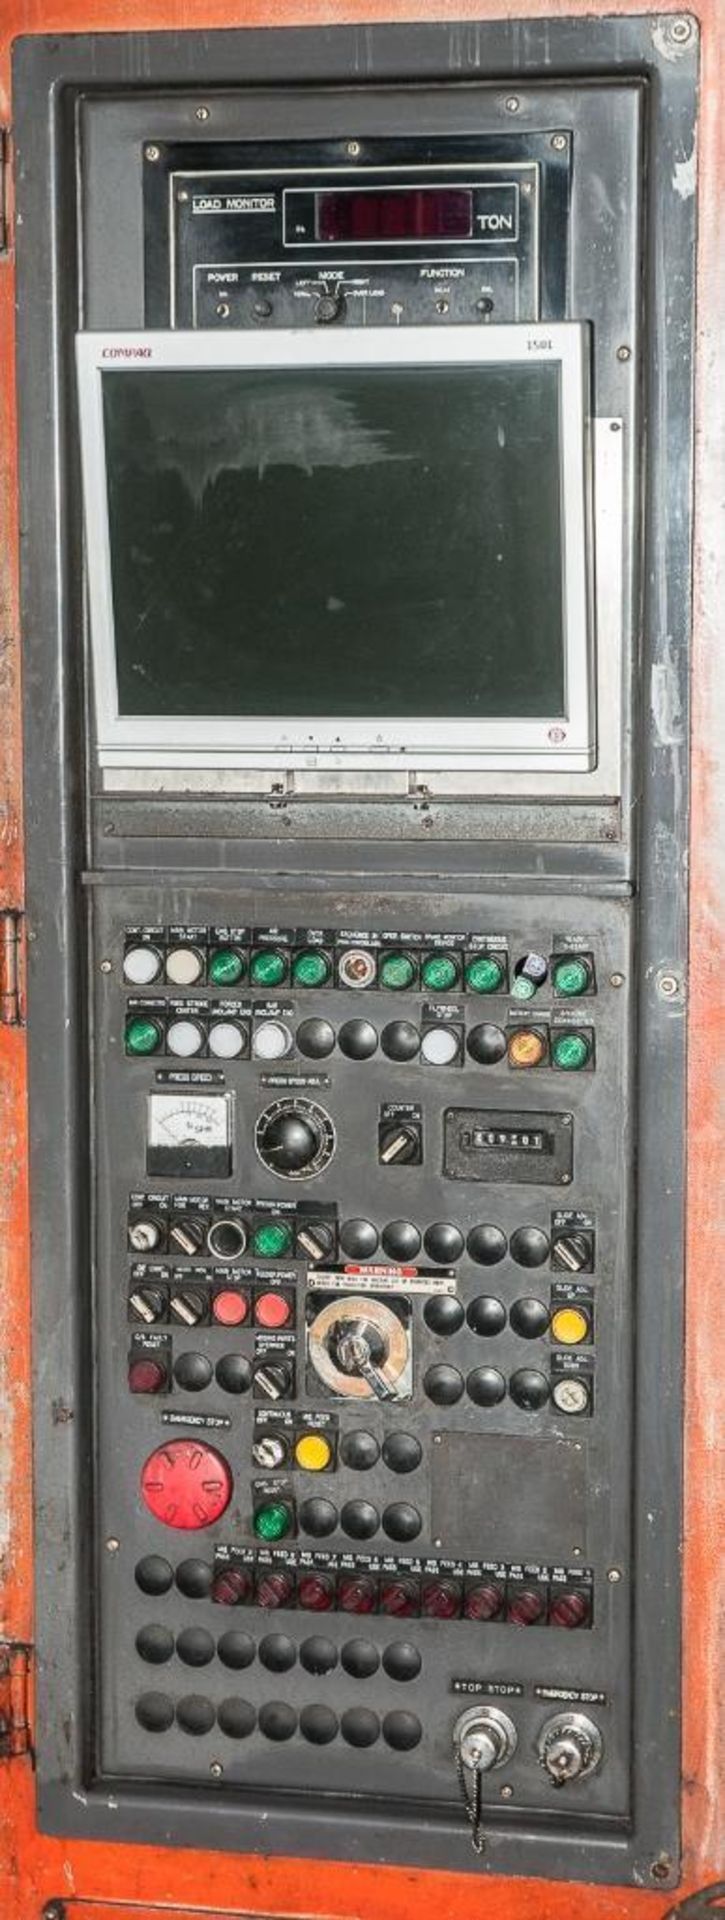 Komatsu Model E2G400 400 Ton Eccentric Geared Transfer Press, S/N 10002, (1984), Link Drive, 15-25 s - Image 6 of 14